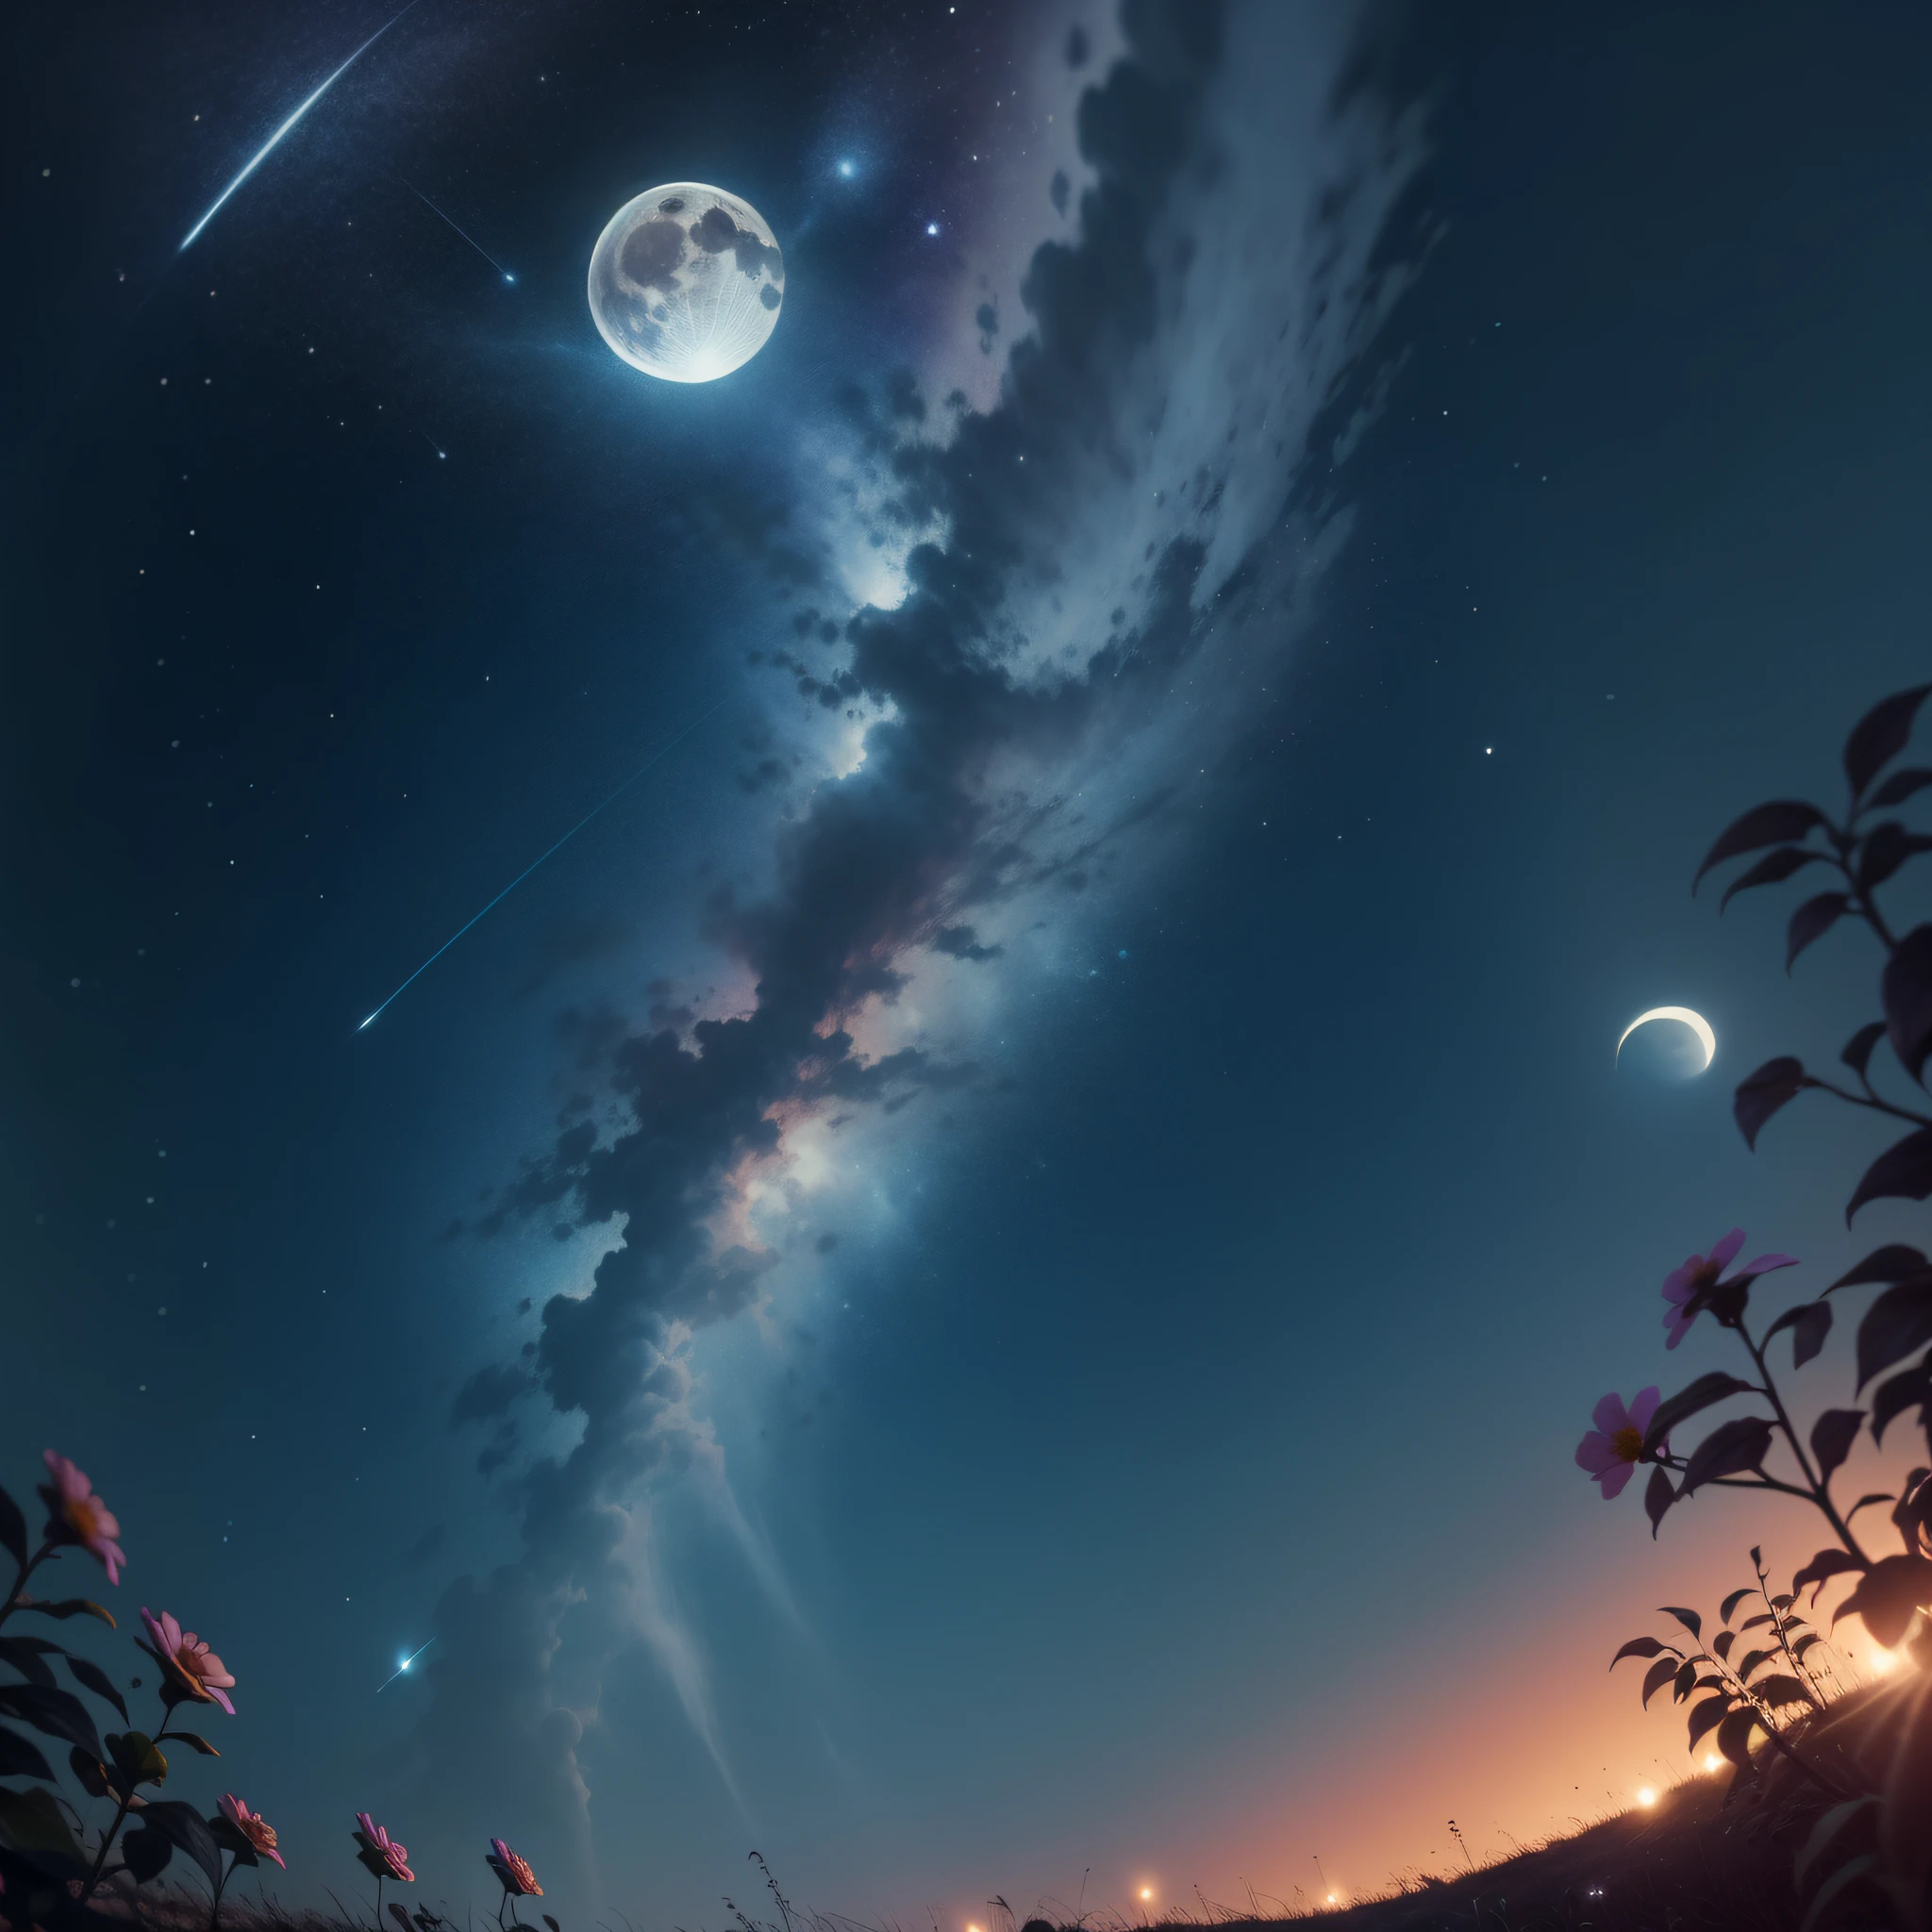 nuit de pleine lune, Le ciel est clair, les étoiles filantes tombent, Les fleurs se balancent, La Lune brille et scintille